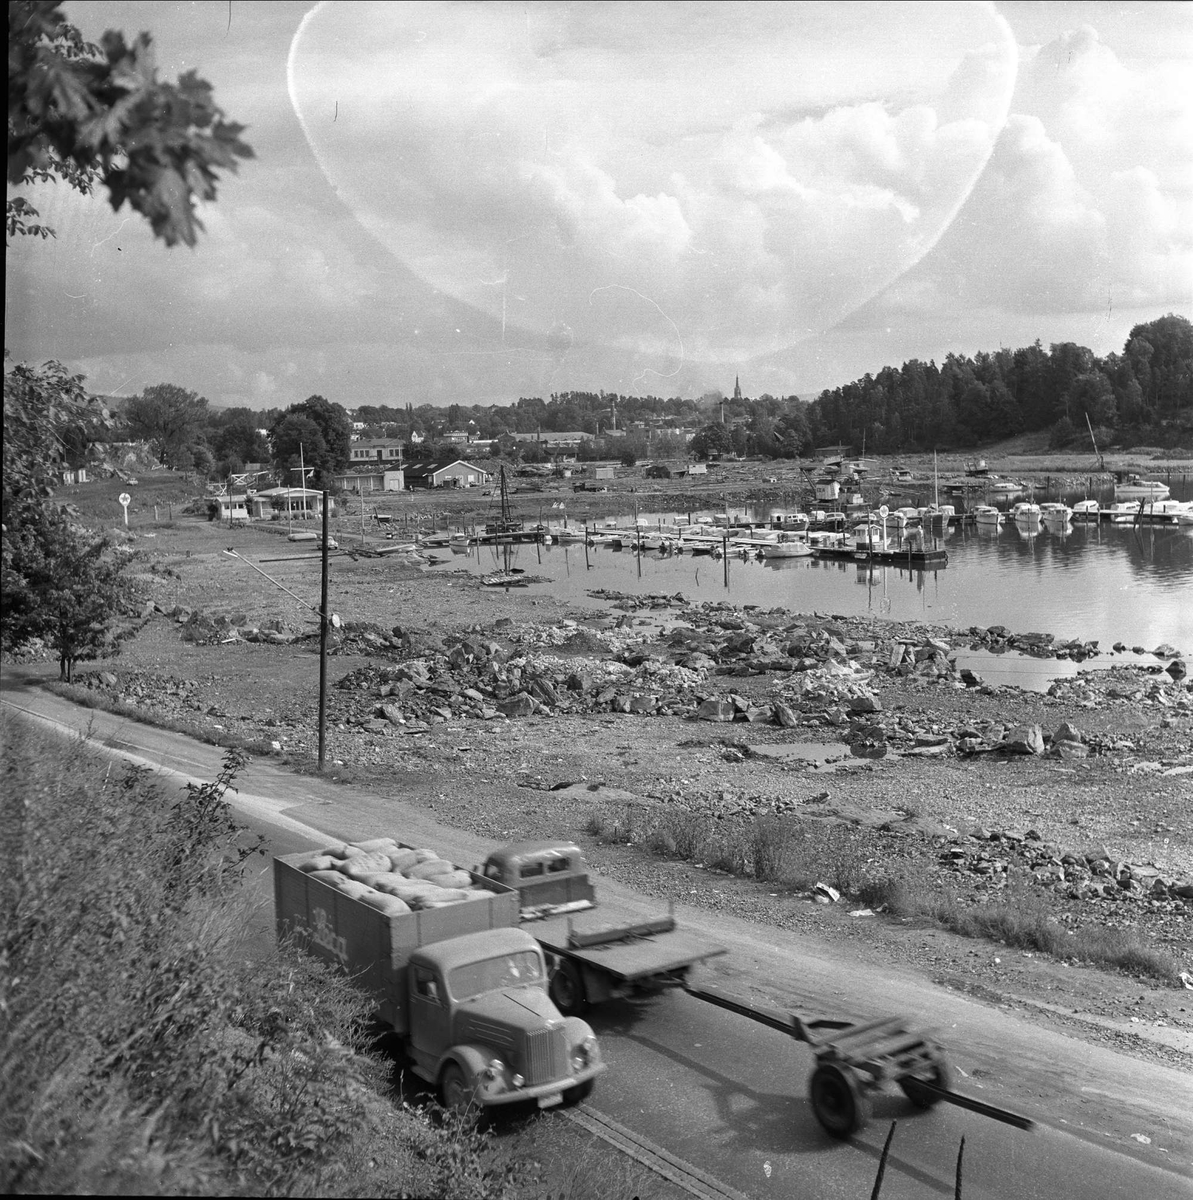 Sjølyst, Oslo, 03.09.1957. Veien og landskap med småbåthavn.